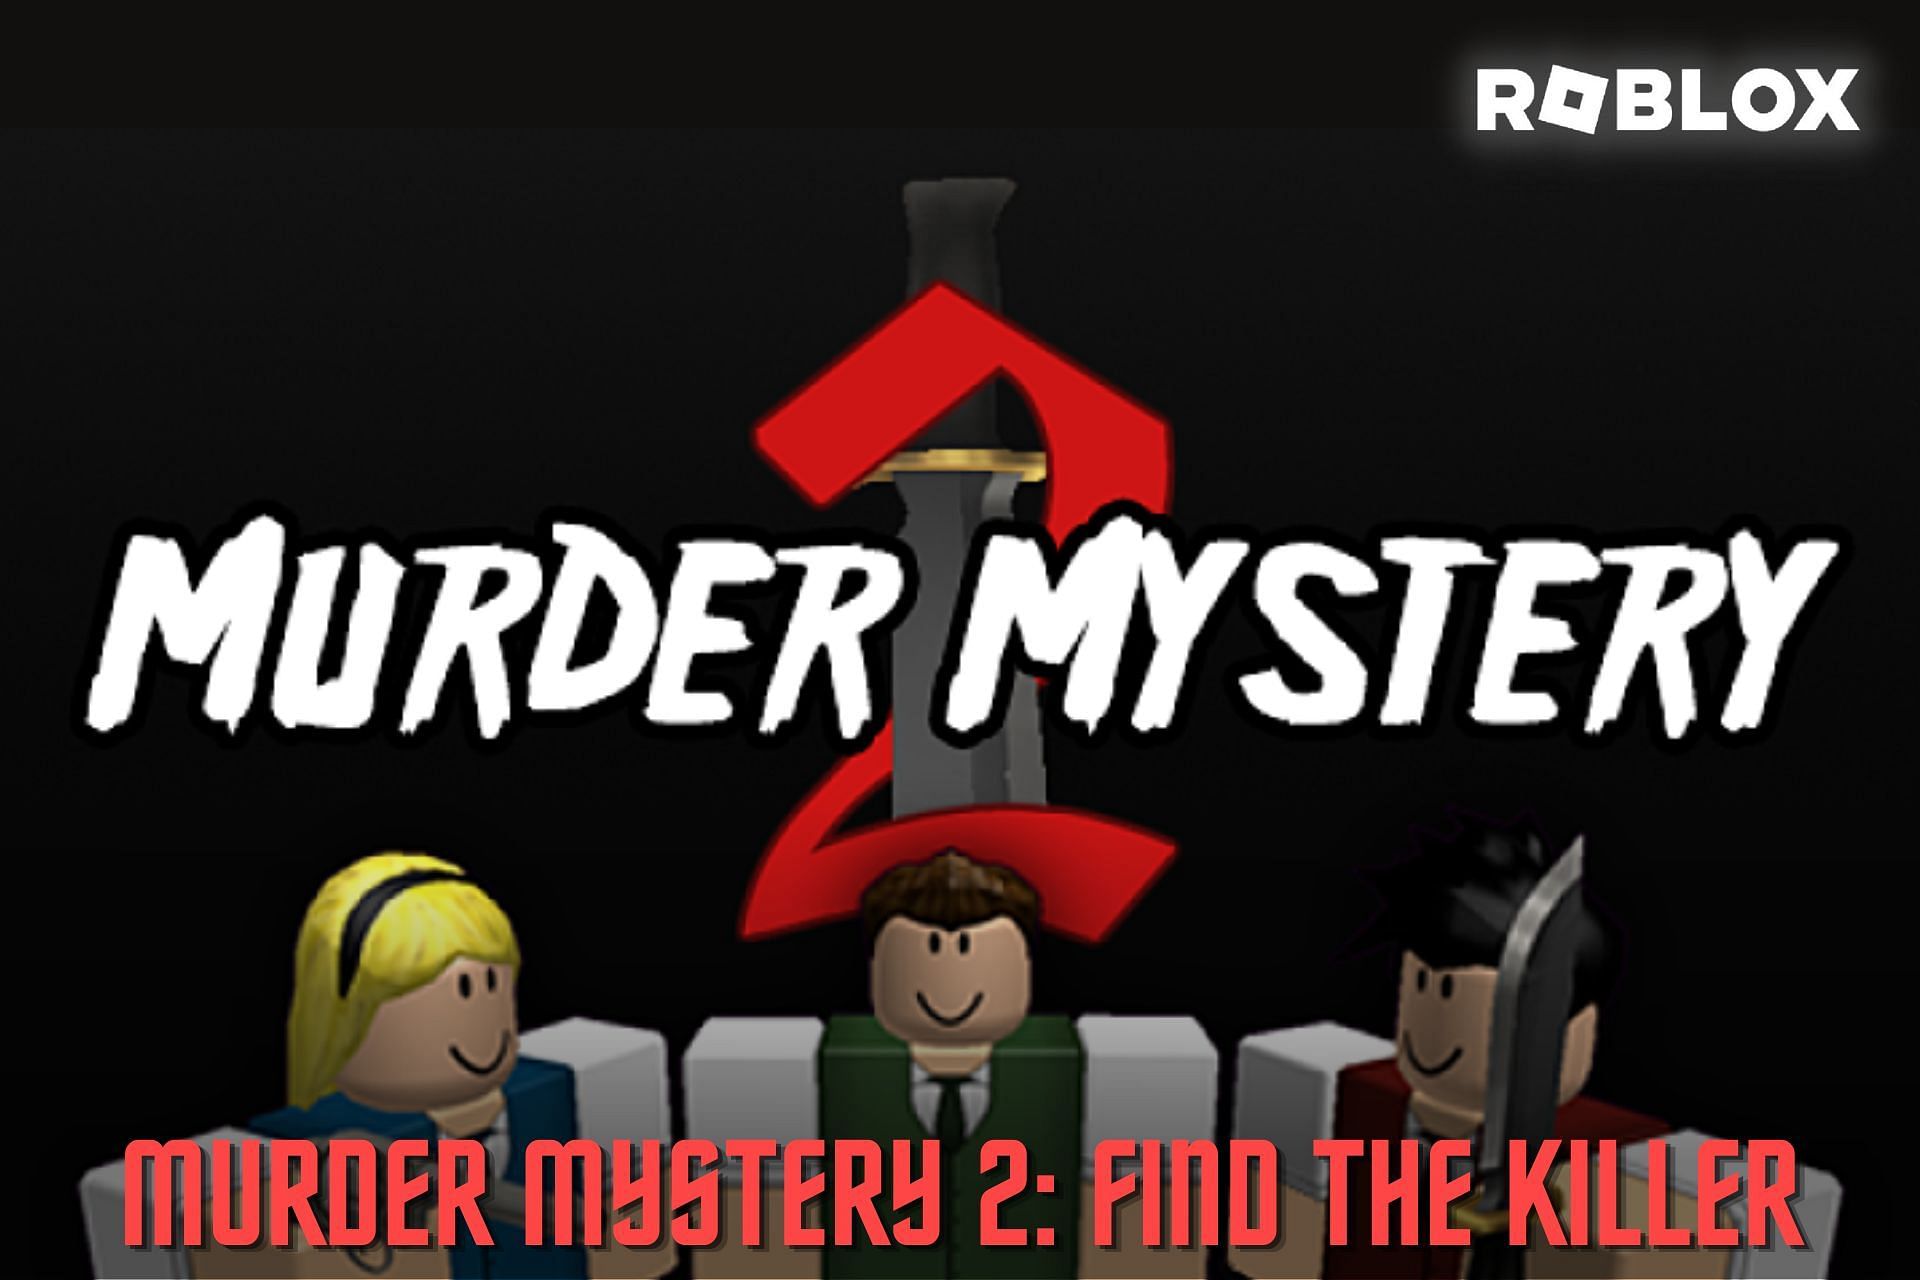 Murder Mystery 2 codes for December 2023